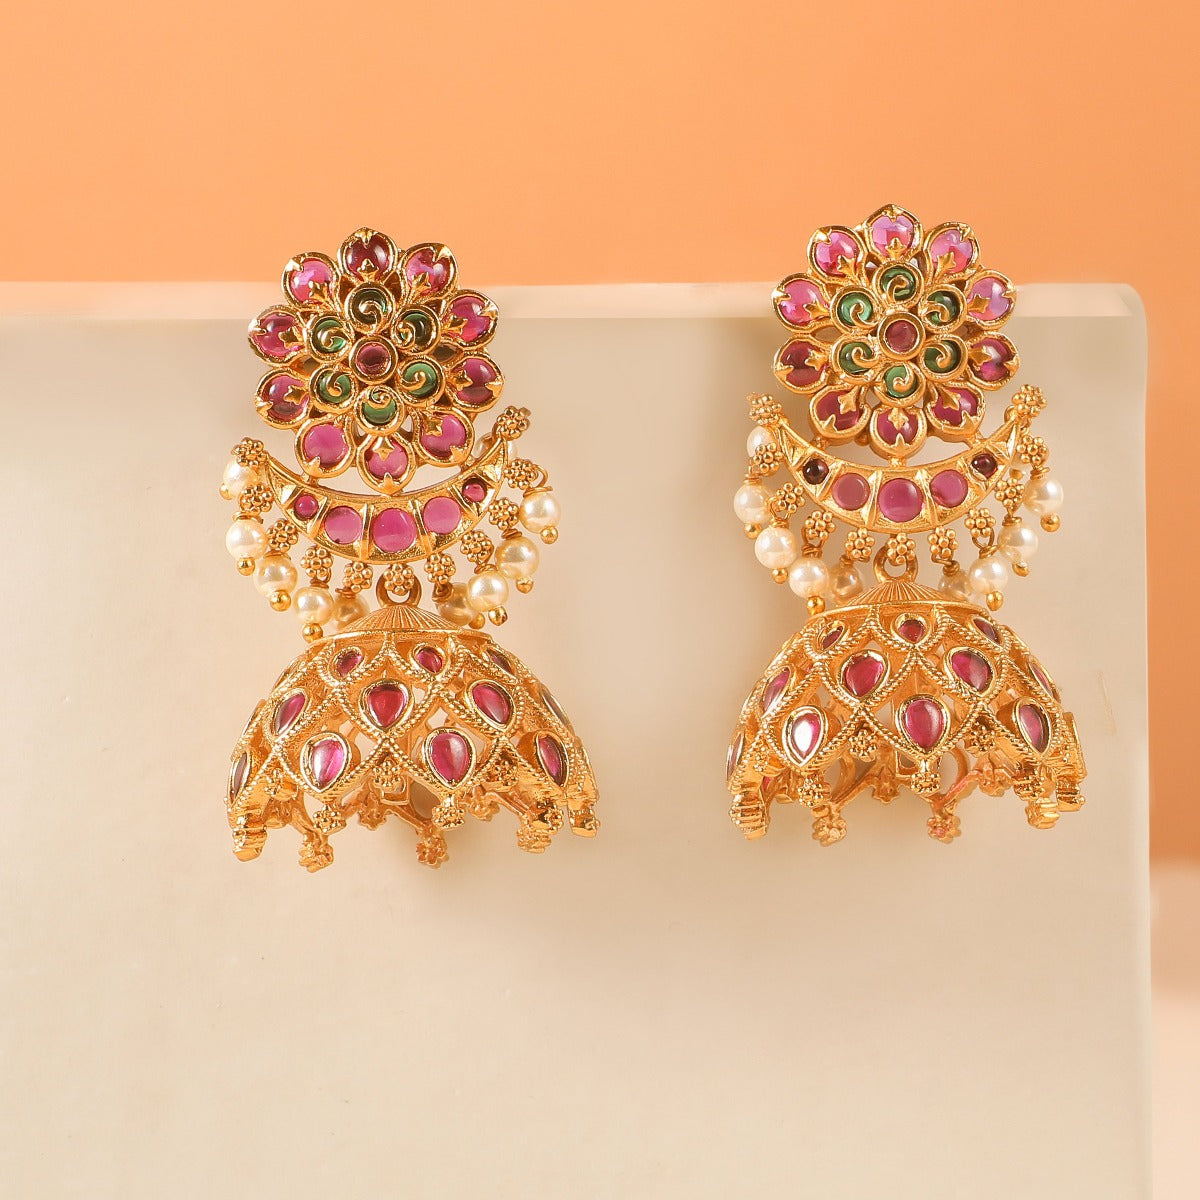 Antique Earrings Online | Antique Gold Earrings Designs | Kalyan Jewellers